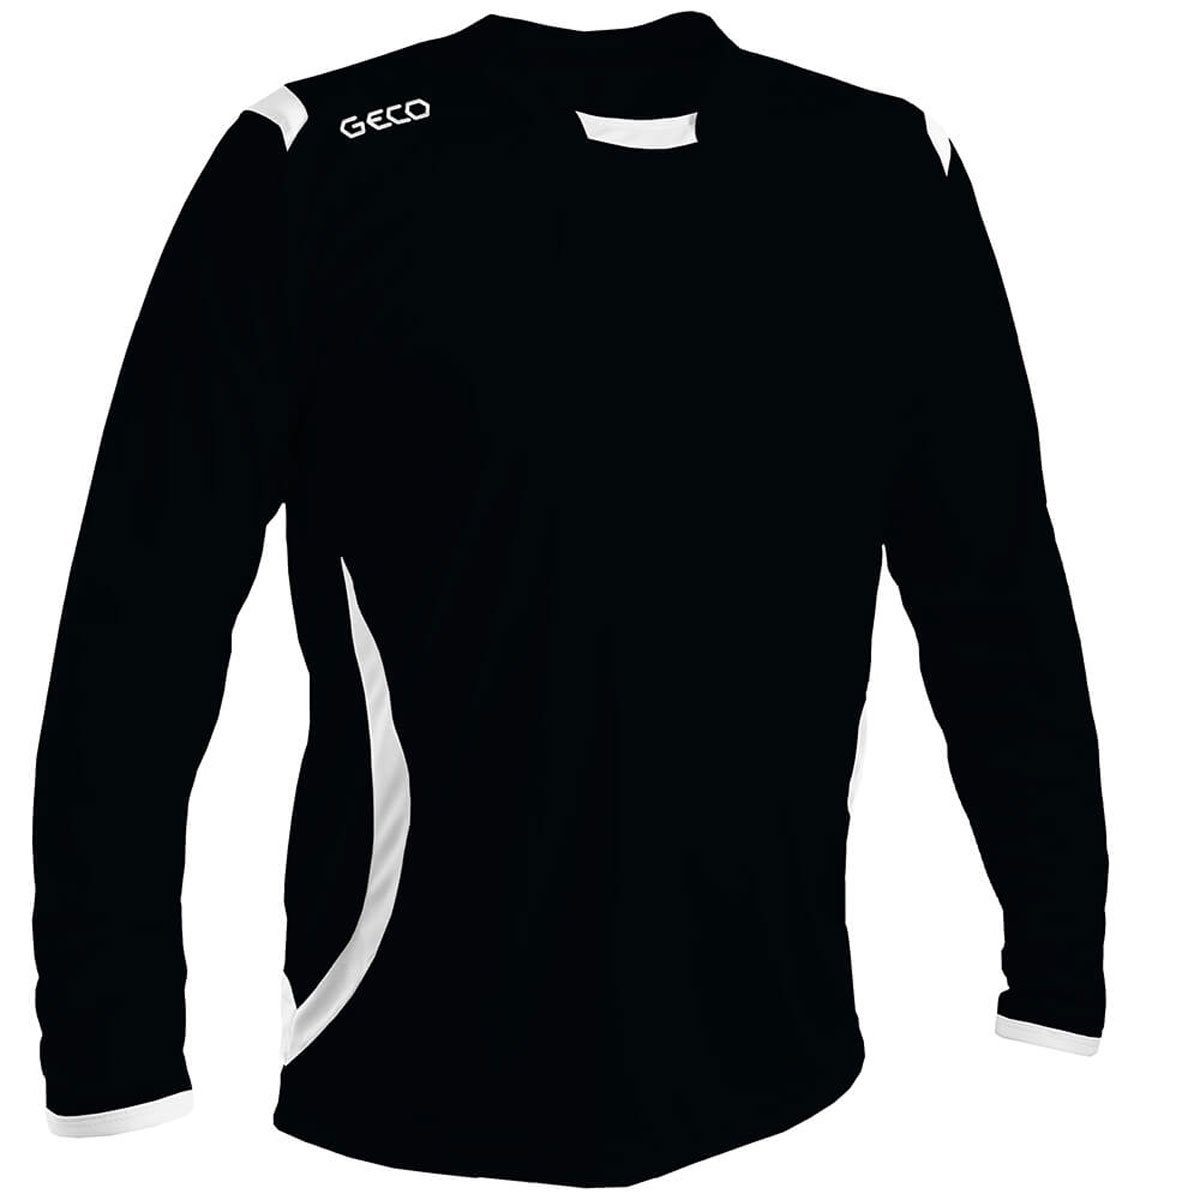 Geco Fußballtrikot Sportswear zweifarbig Geco Levante Fußball schwarz/weiß Trikot langarm